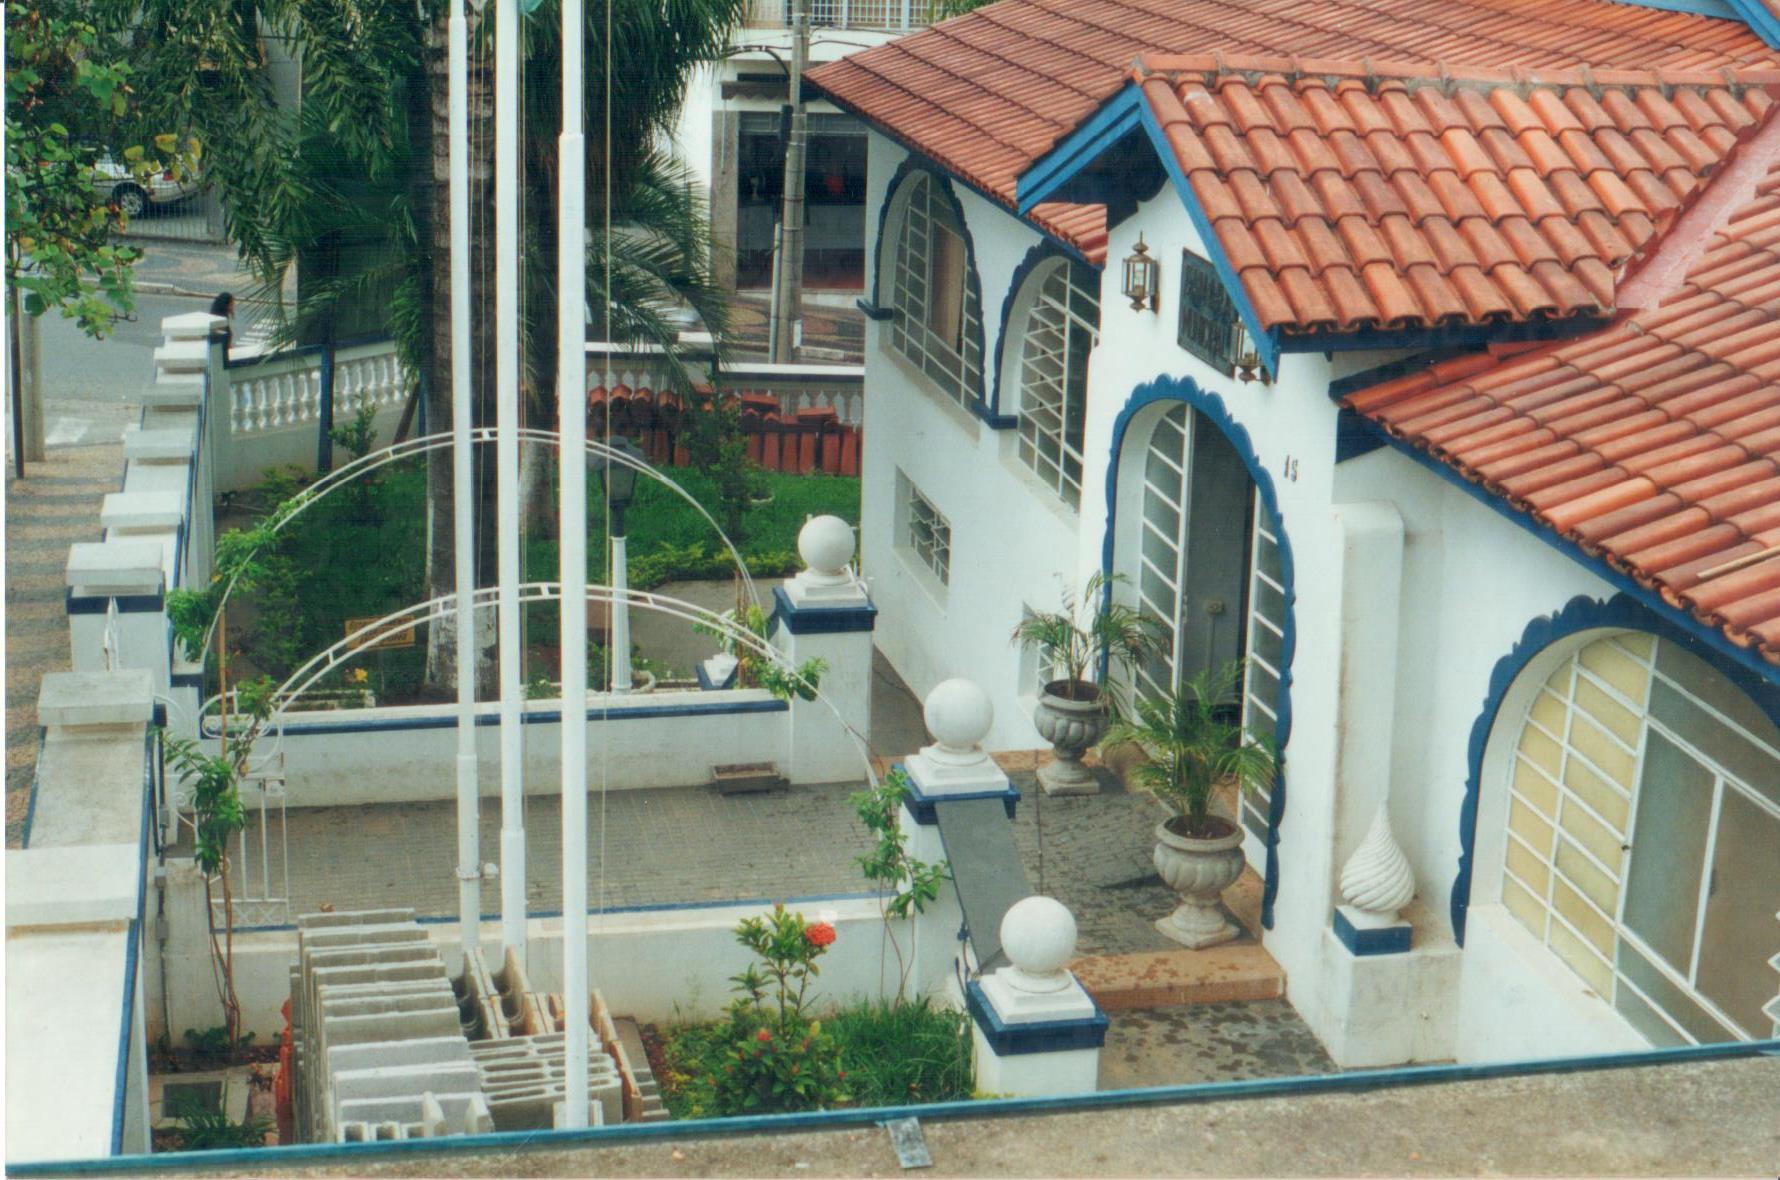 Fotografia de autoria anônima. Local: Antiga Câmara Municipal de Valinhos, em Valinhos-SP, ano desconhecido [19].